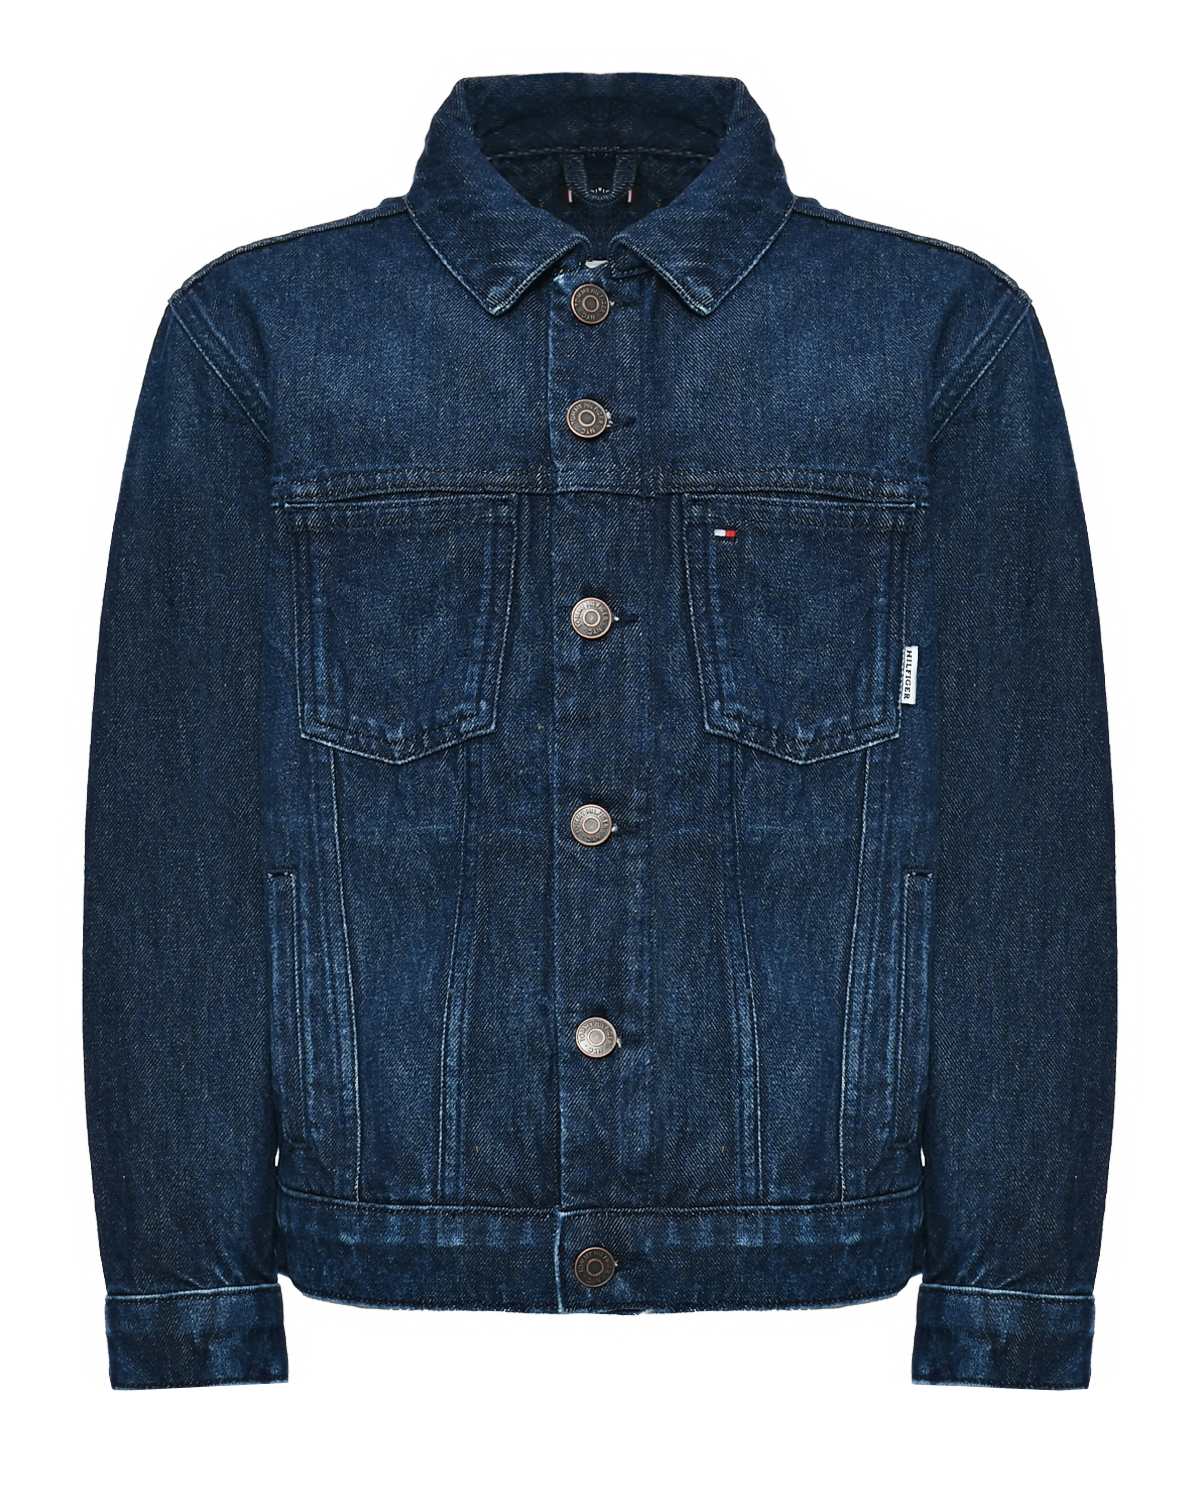 Джинсовая куртка синего цвета Tommy Hilfiger, размер 176 - фото 1